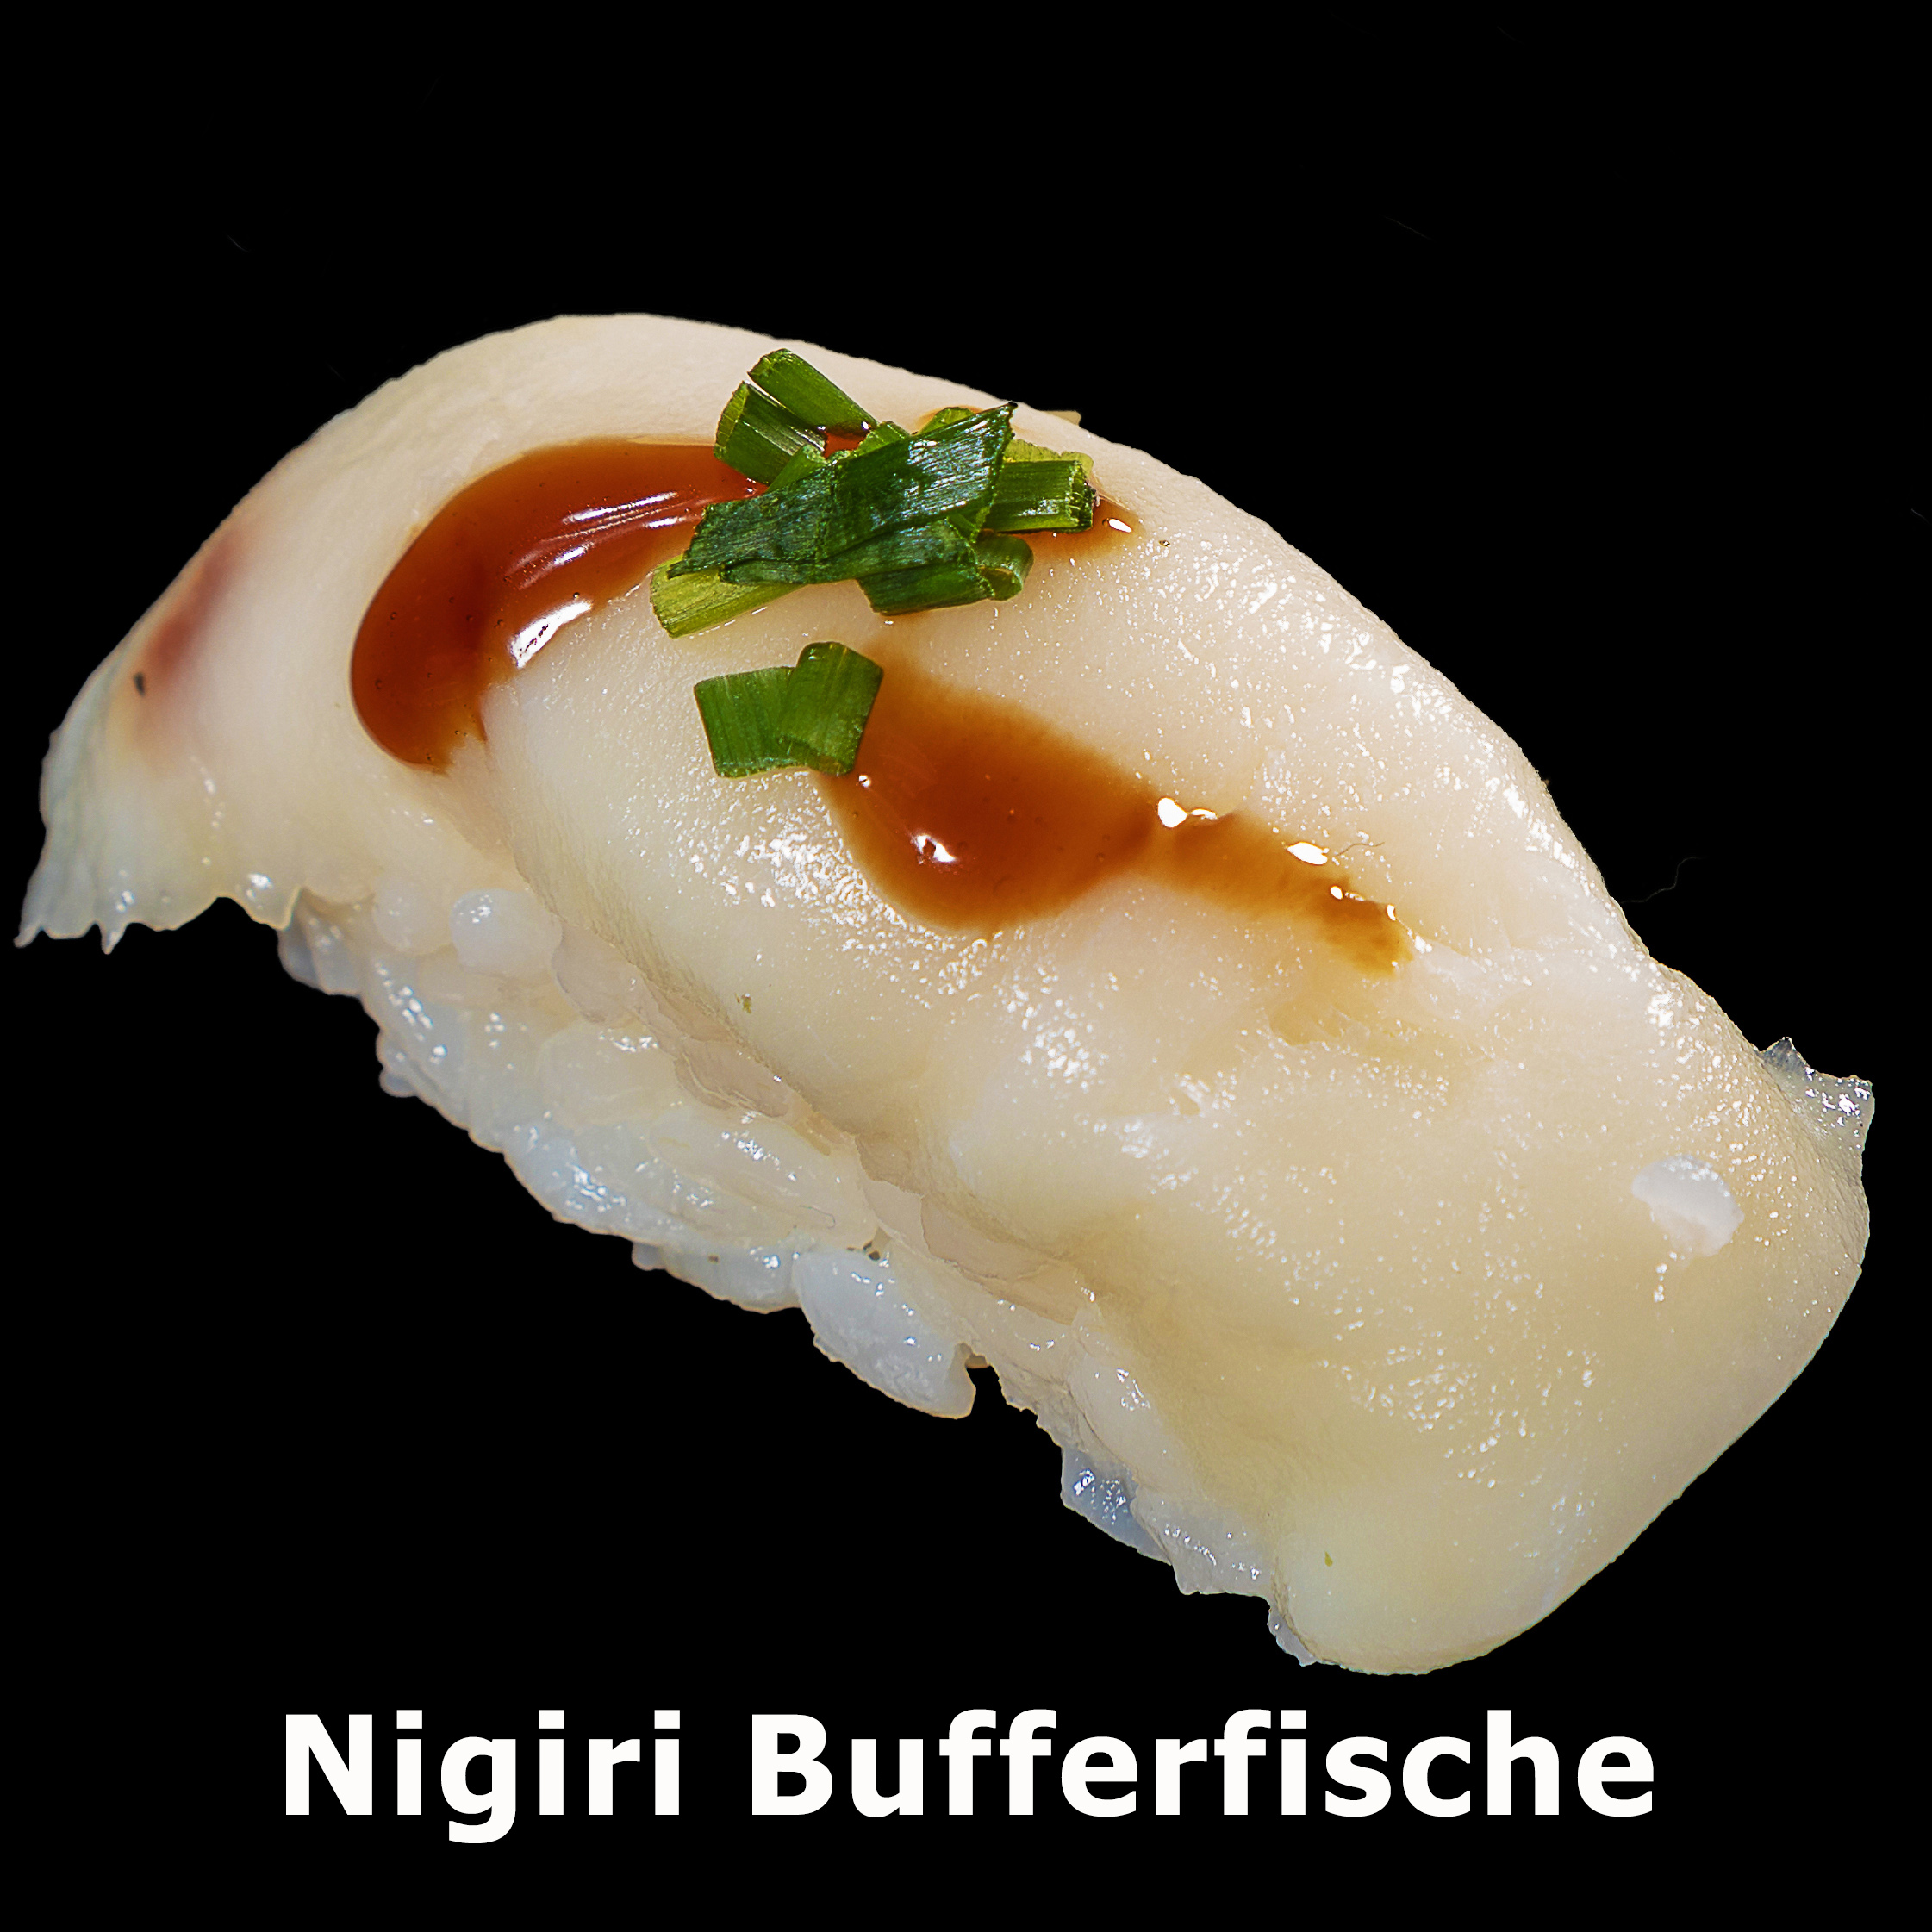 62. Nigiri Bufferfische